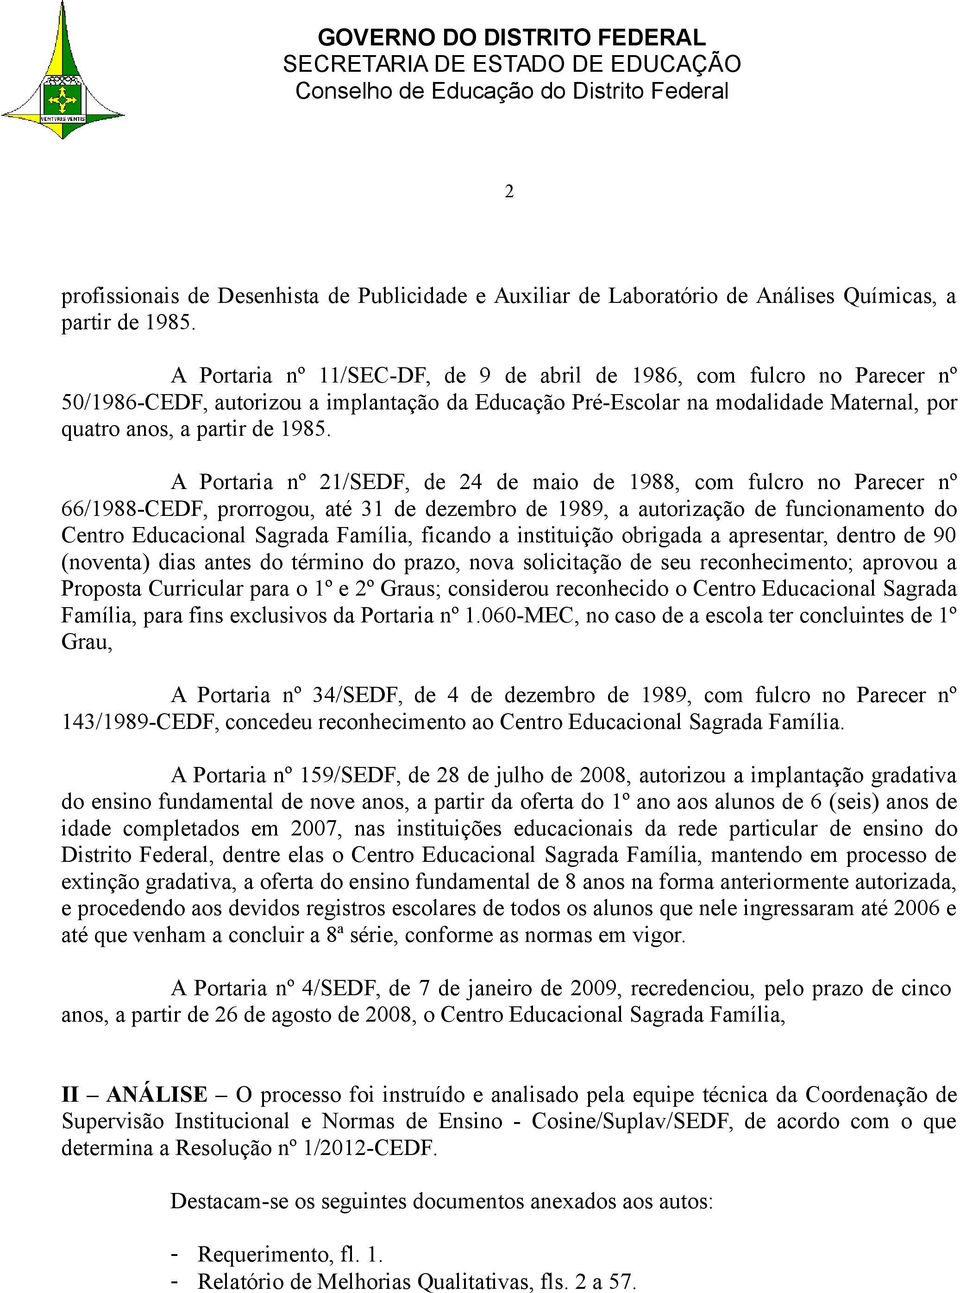 A Portaria nº 21/SEDF, de 24 de maio de 1988, com fulcro no Parecer nº 66/1988-CEDF, prorrogou, até 31 de dezembro de 1989, a autorização de funcionamento do Centro Educacional Sagrada Família,